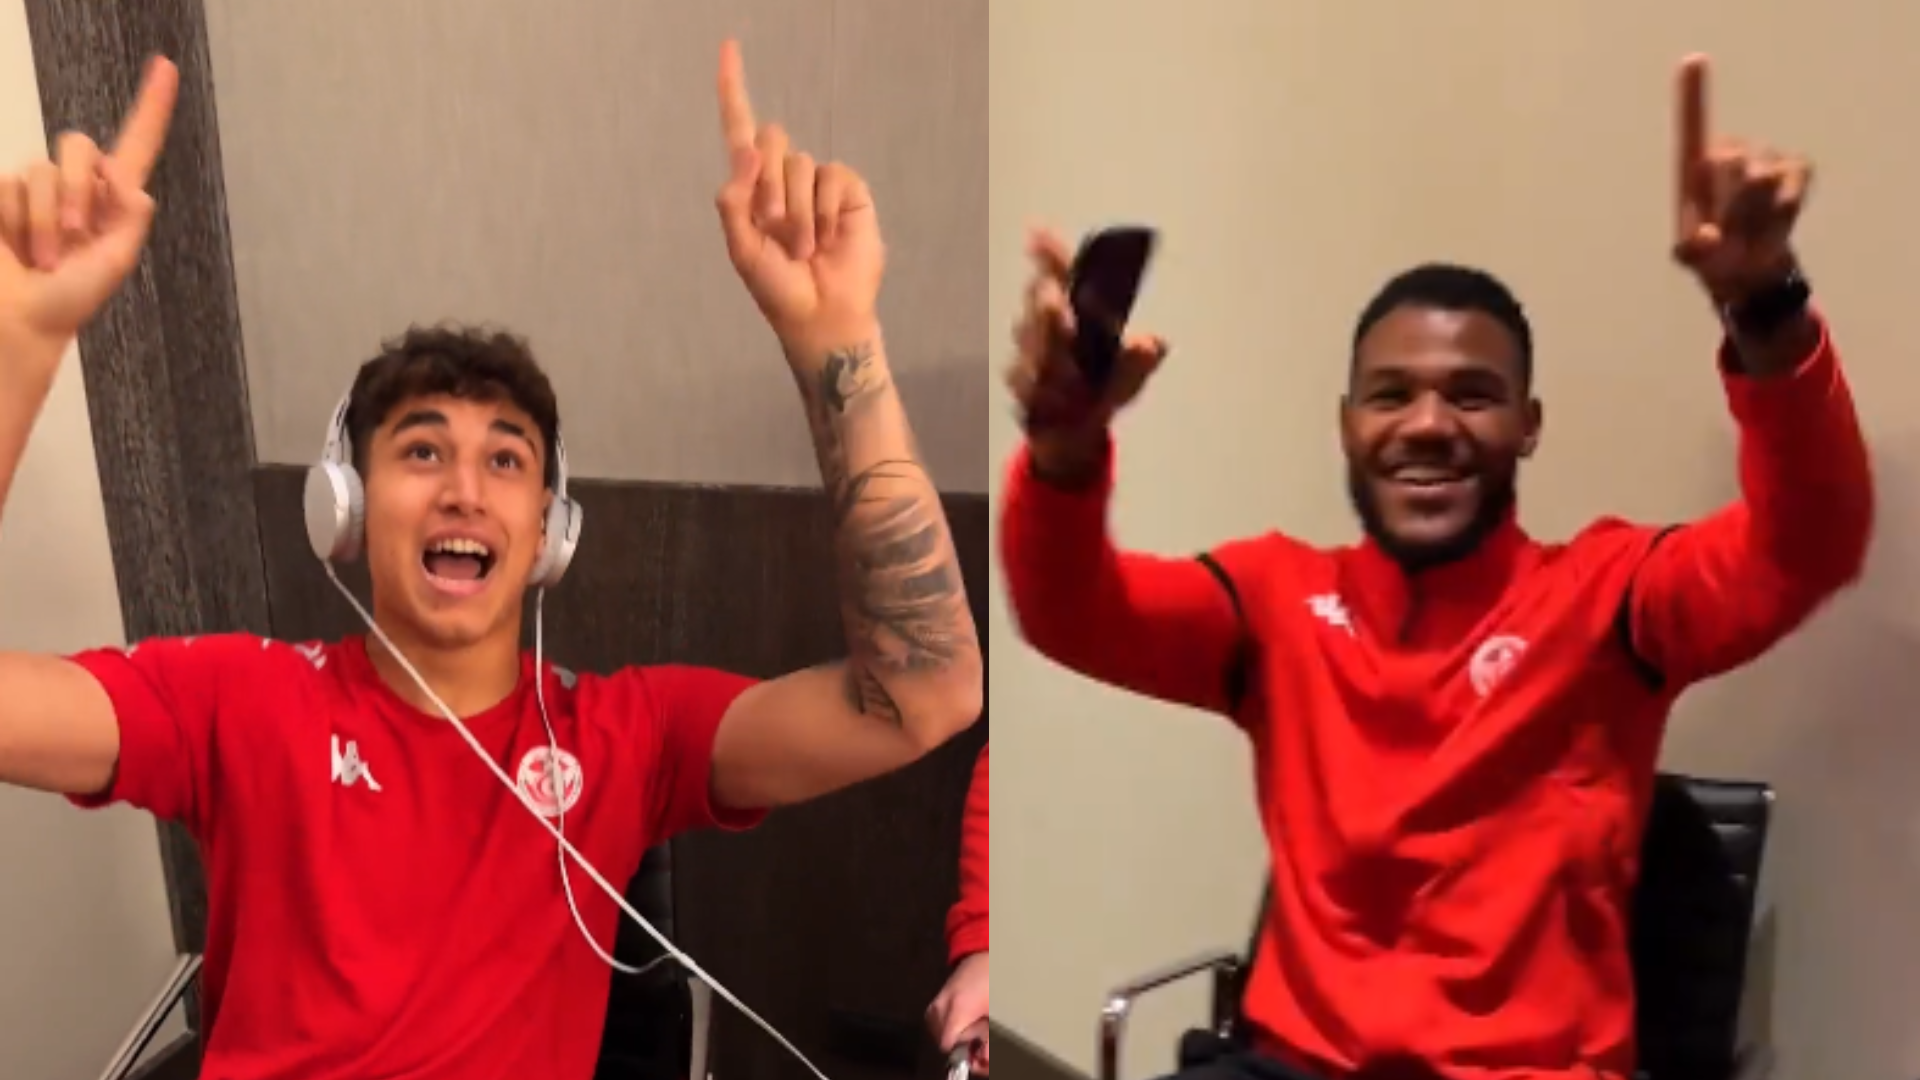 Video: los jugadores de Túnez cantaron "Muchachos" en la previa del partido ante Brasil